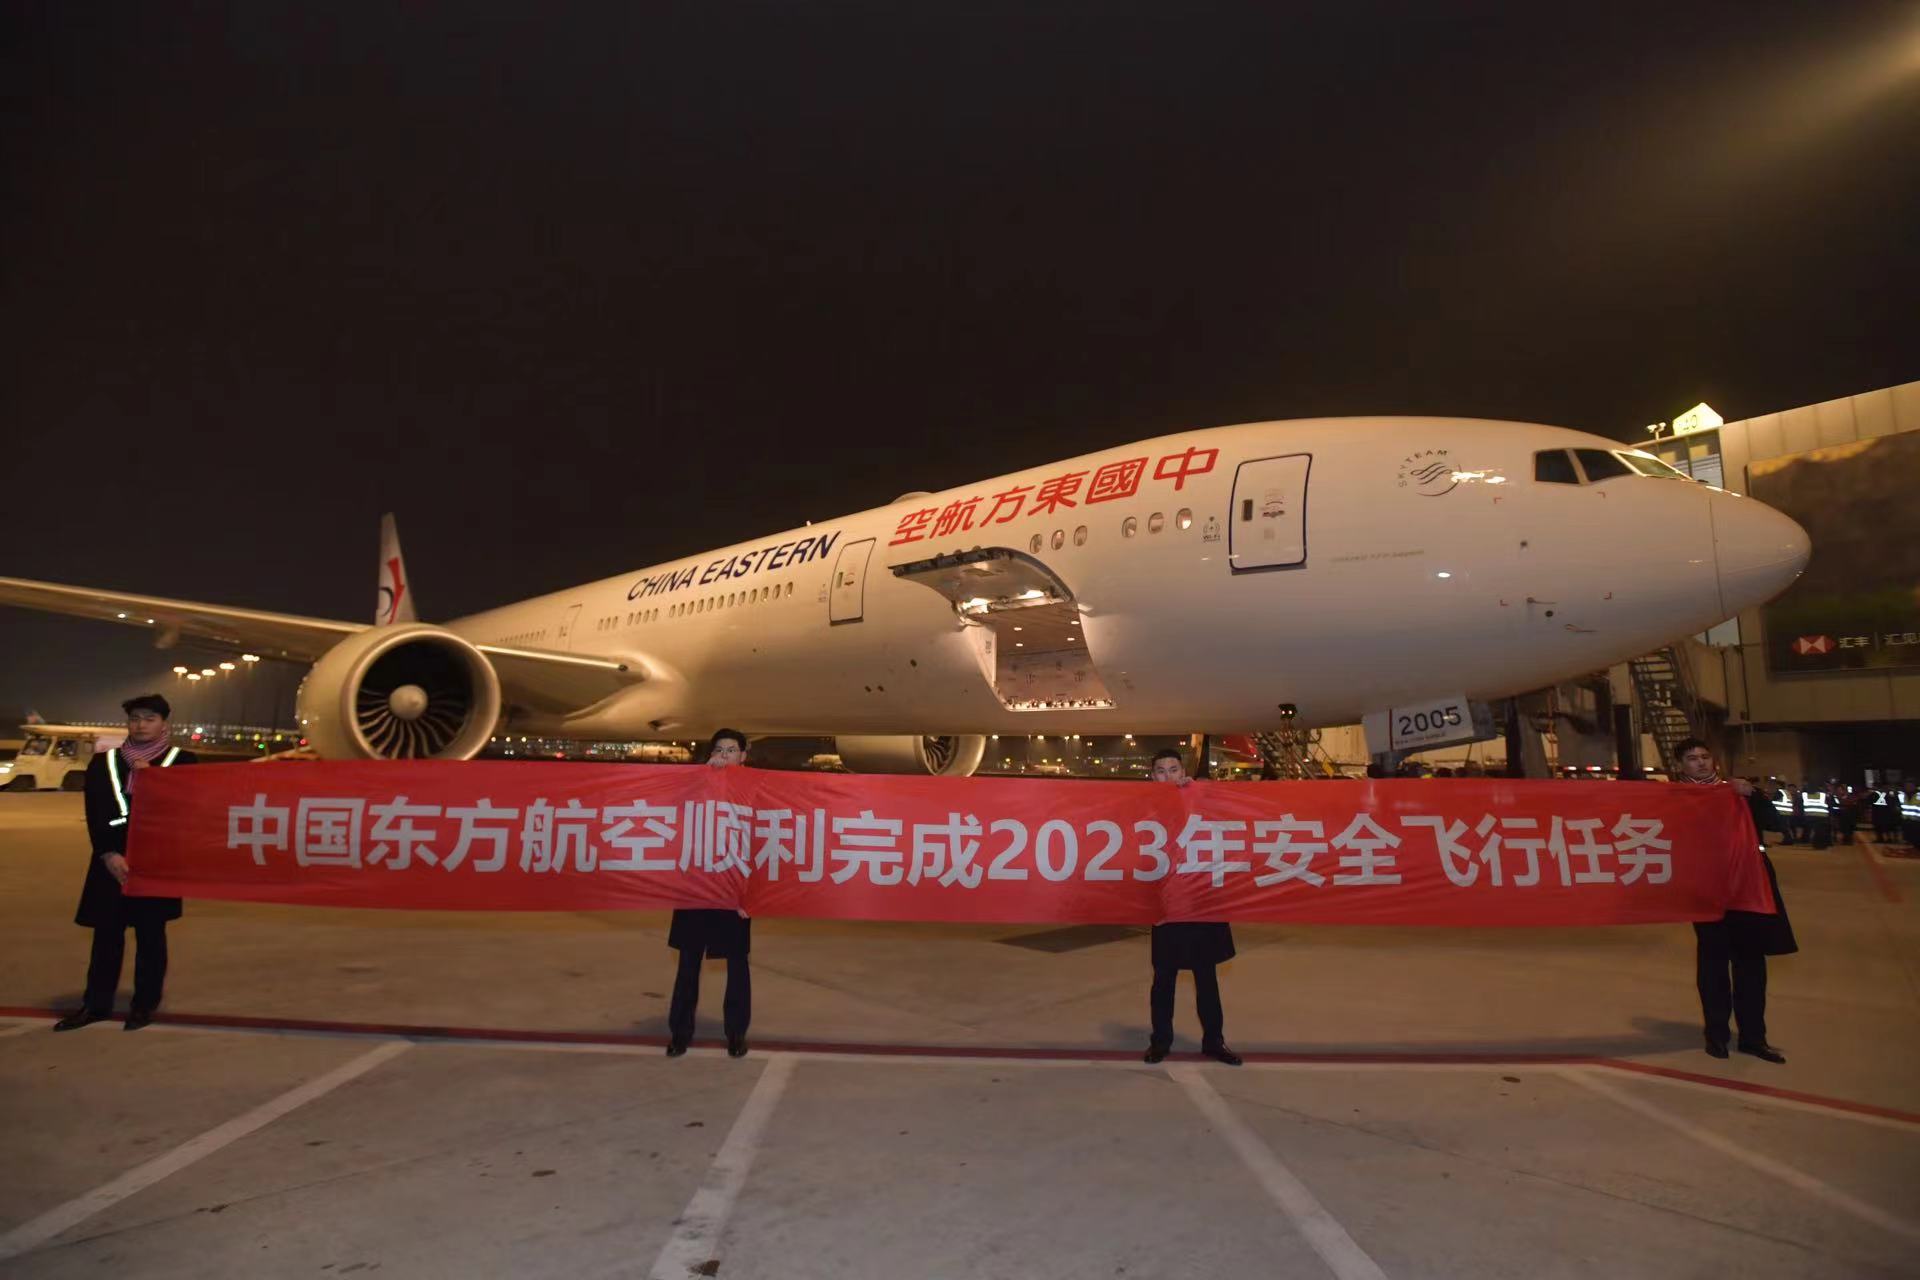 东航2023年航班生产运行顺利收官:全球首家投运C919,承运旅客重回亿人次台阶